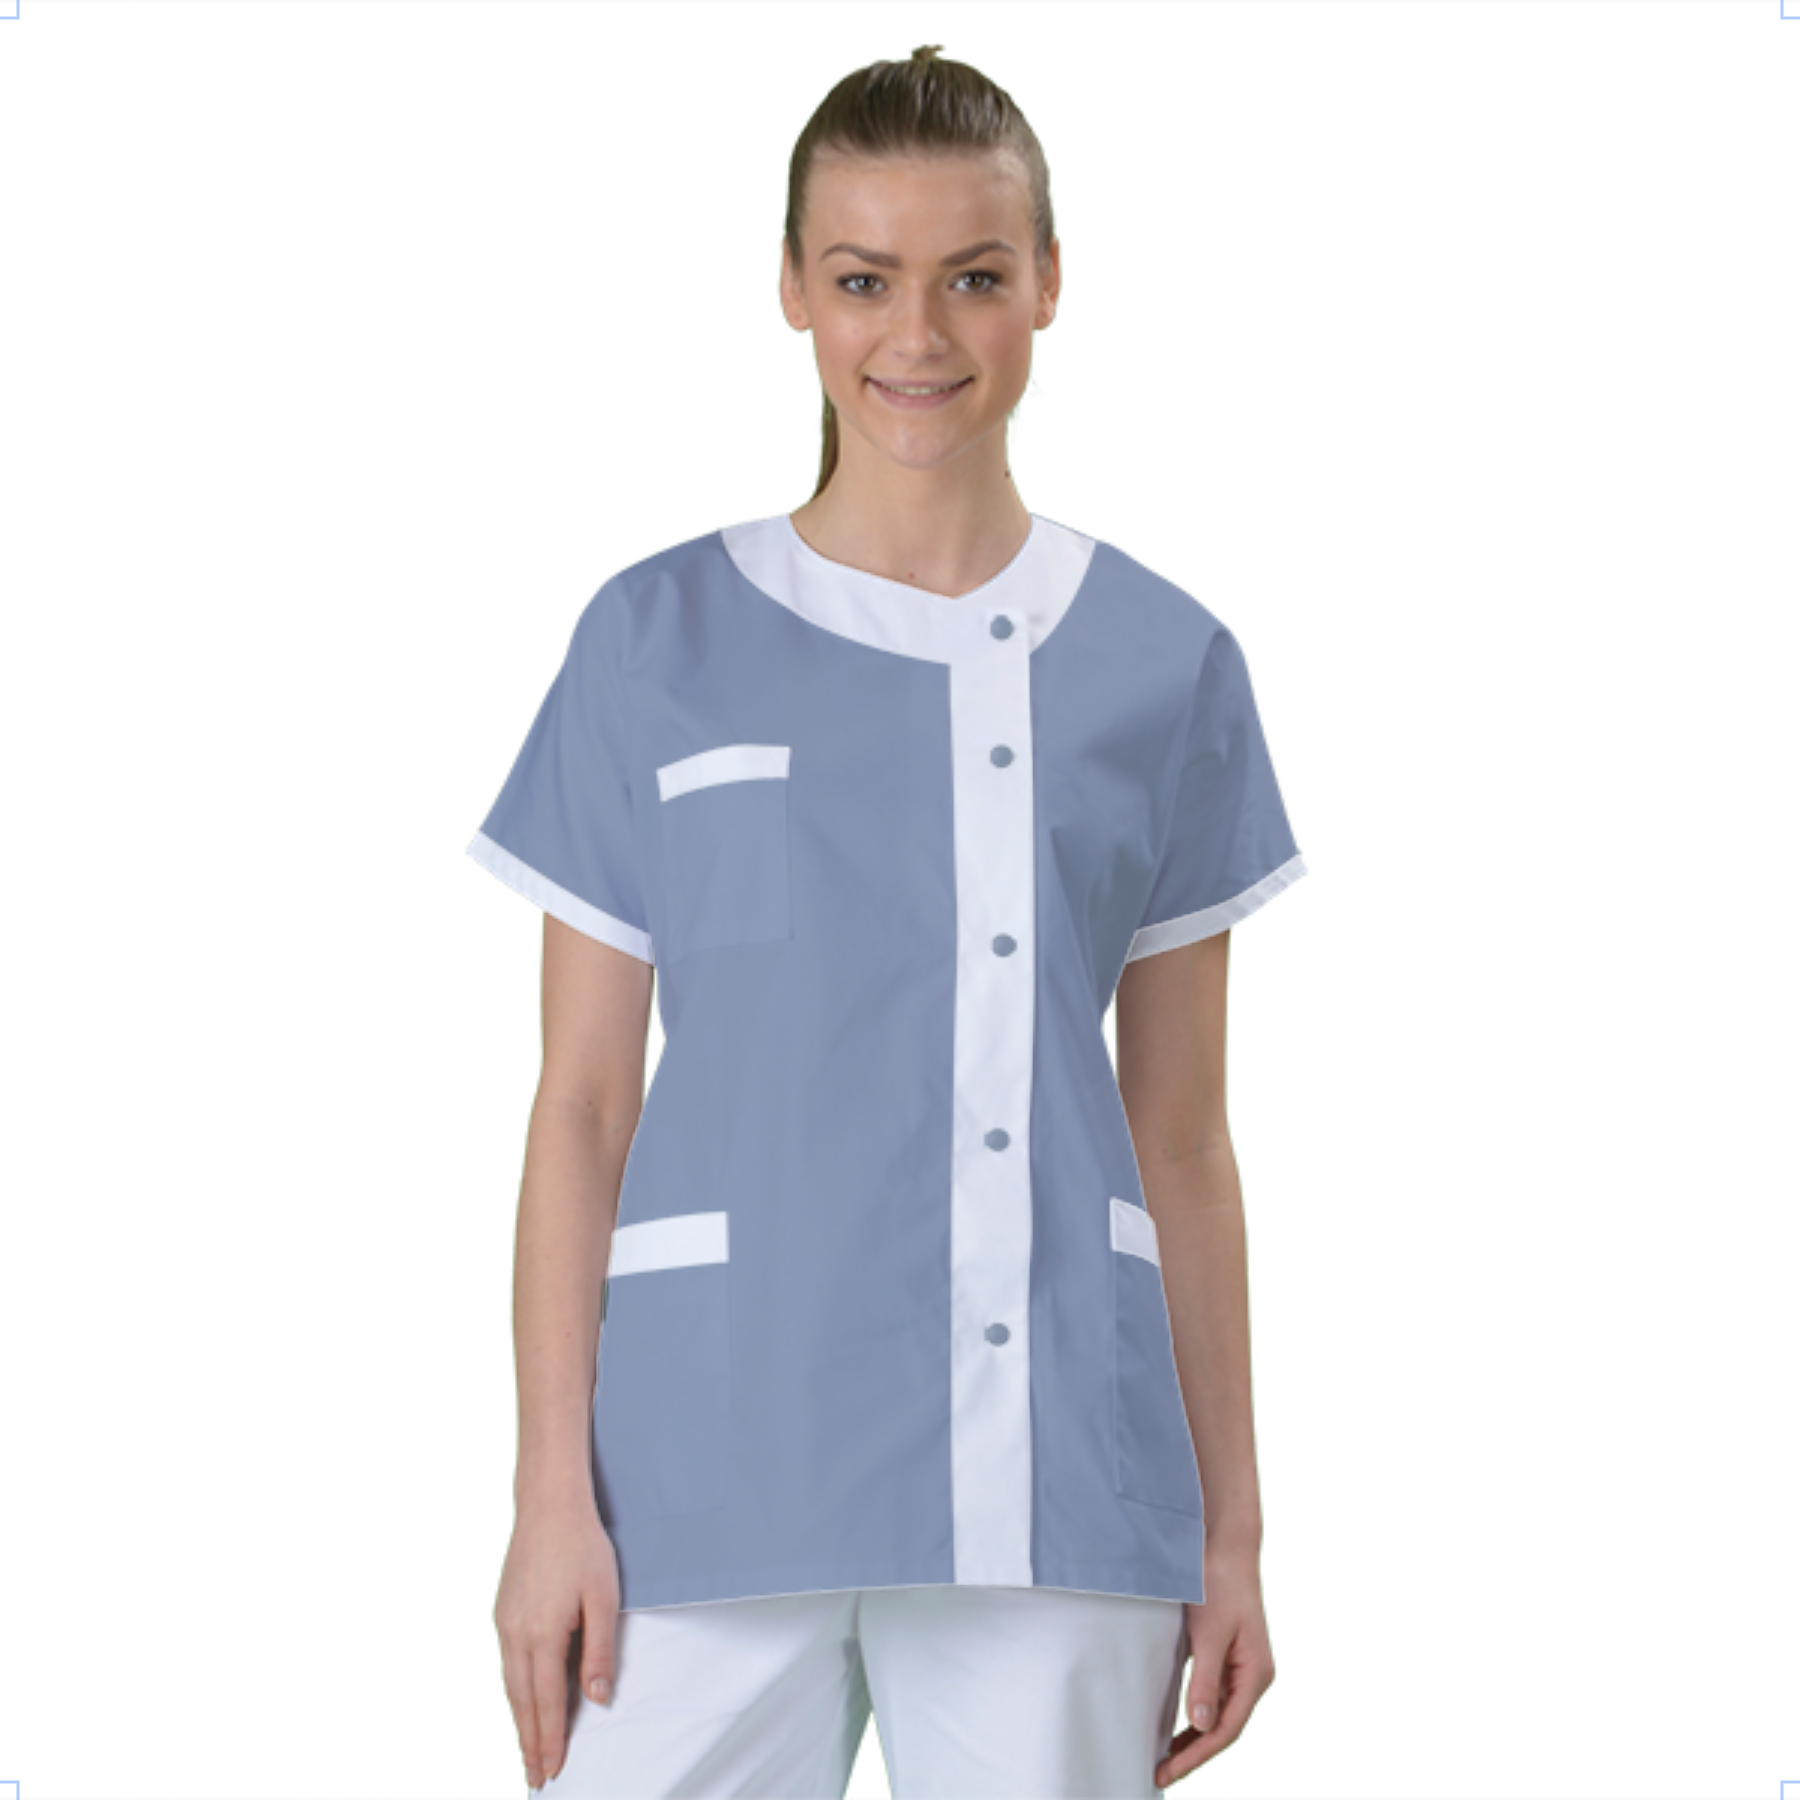 blouse-medicale-col-carre-a-personnaliser acheté - par Graziella - le 20-01-2020